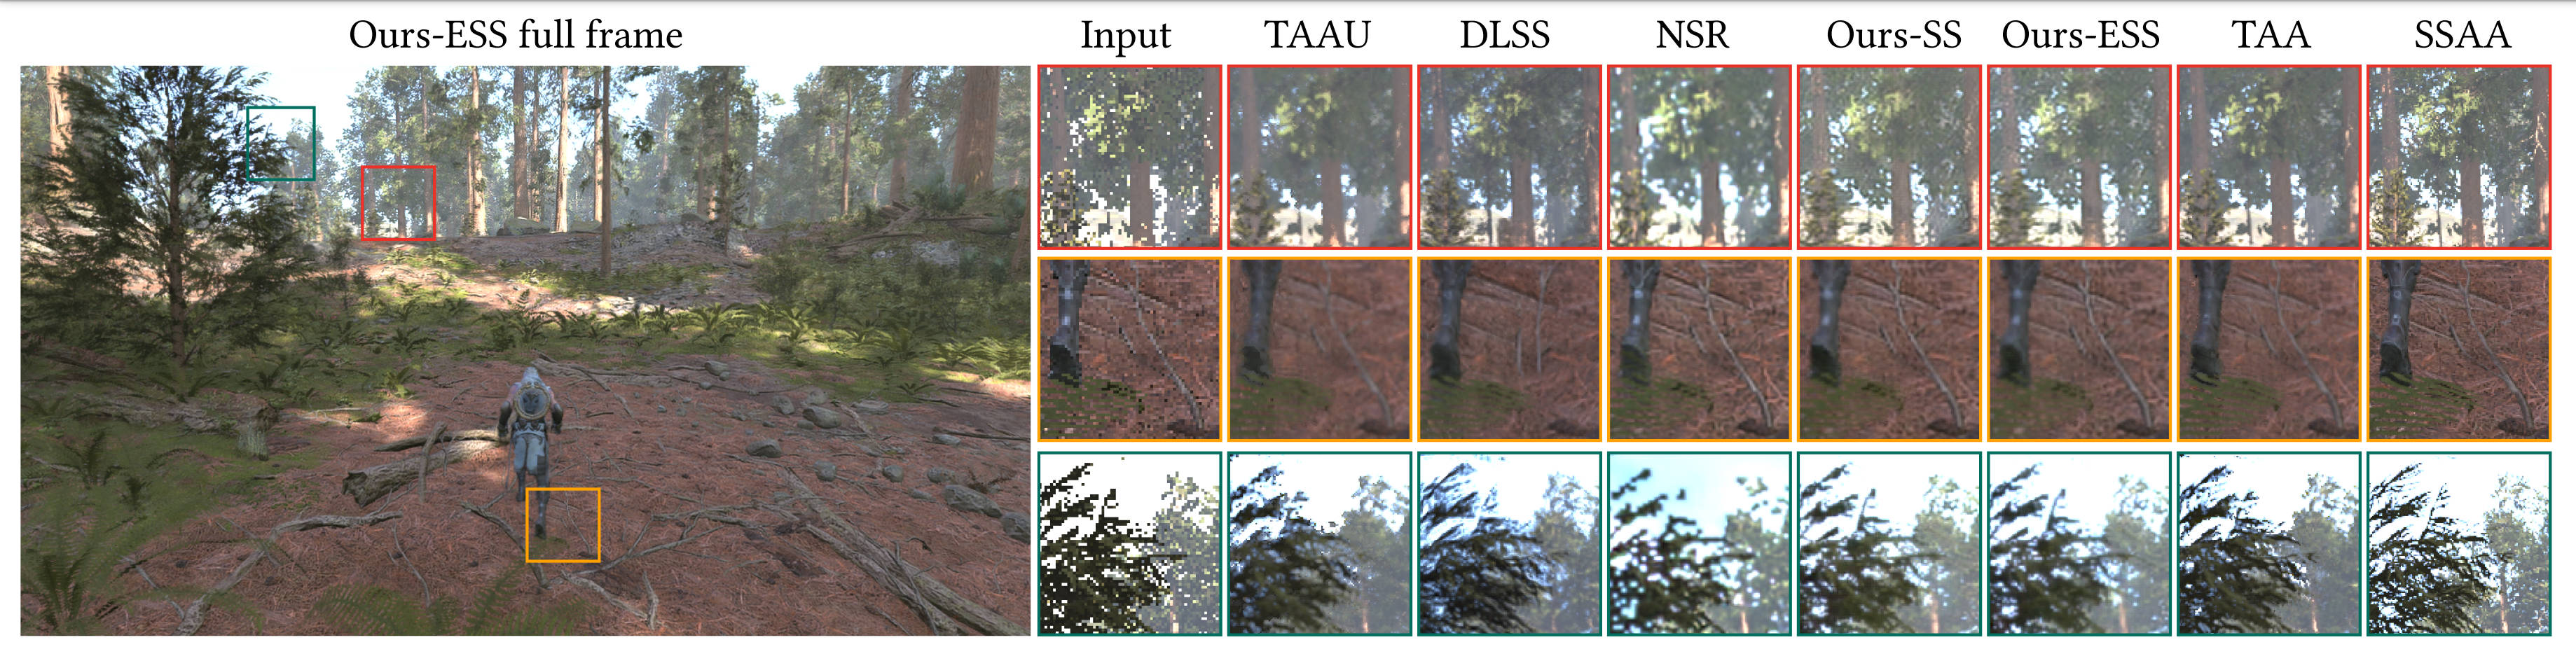 Una comparación de imágenes entre varios algoritmos de generación de cuadros.